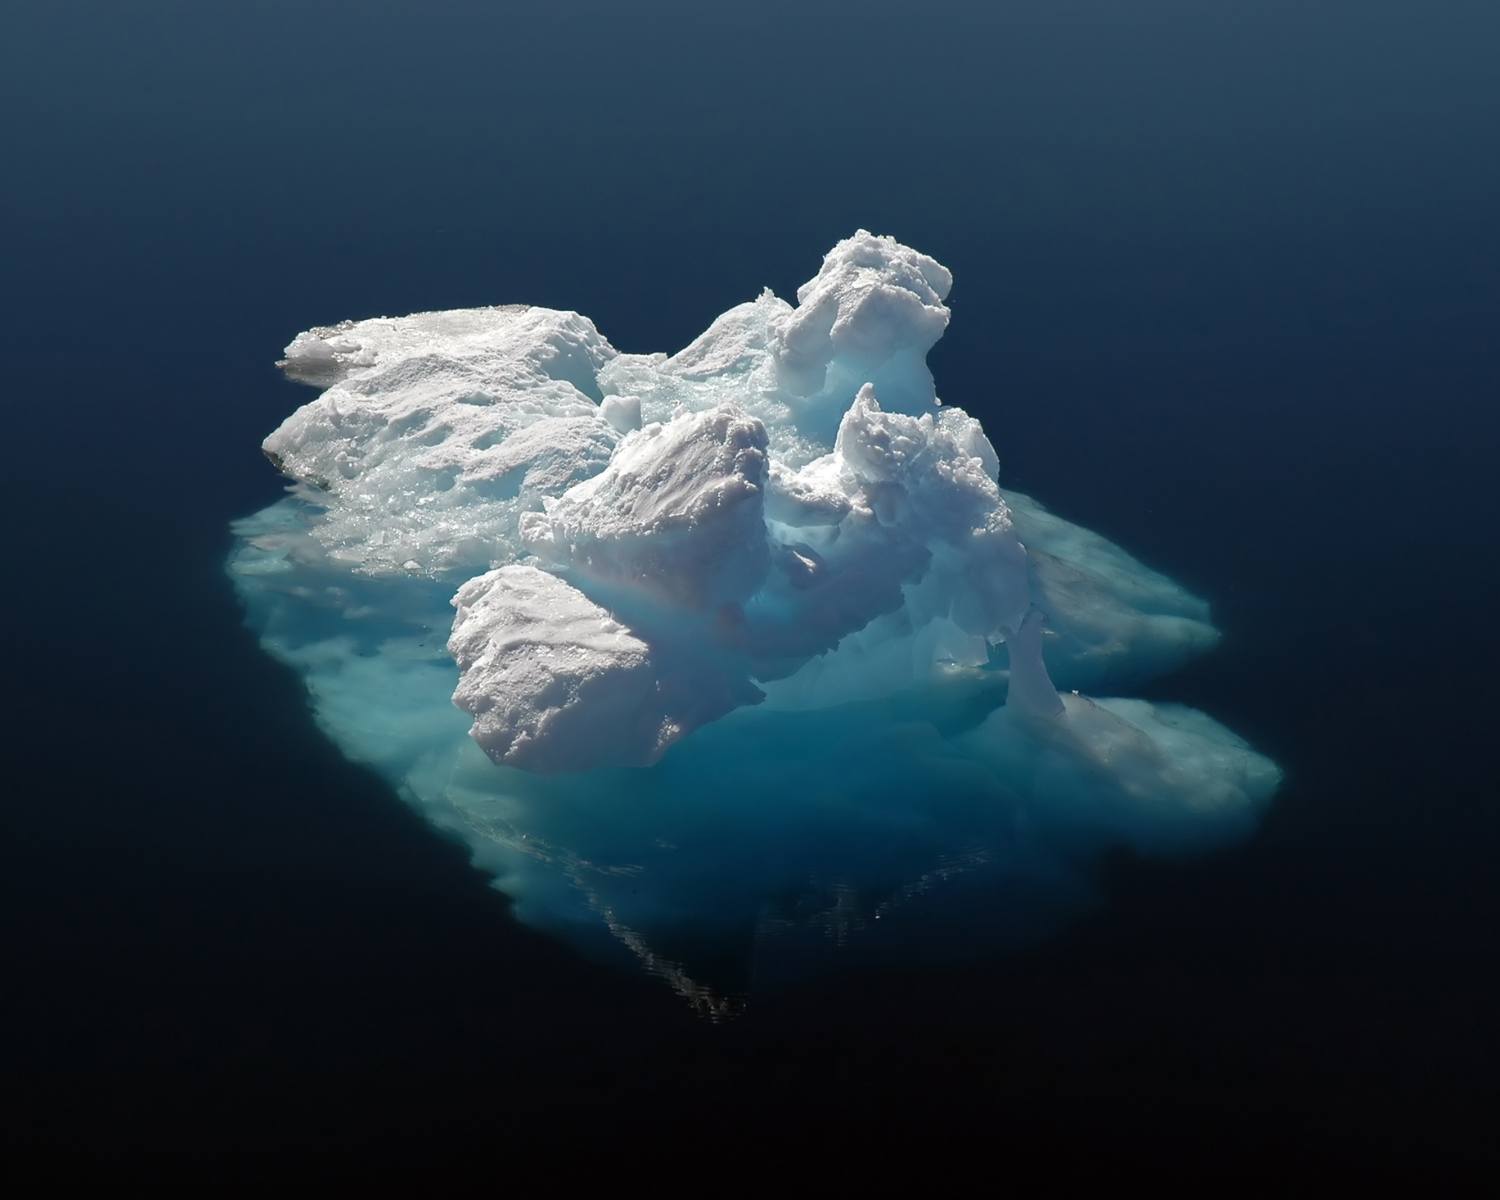 Schmelzender Eisberg im Wasser als Symbol für die Klimastrategie